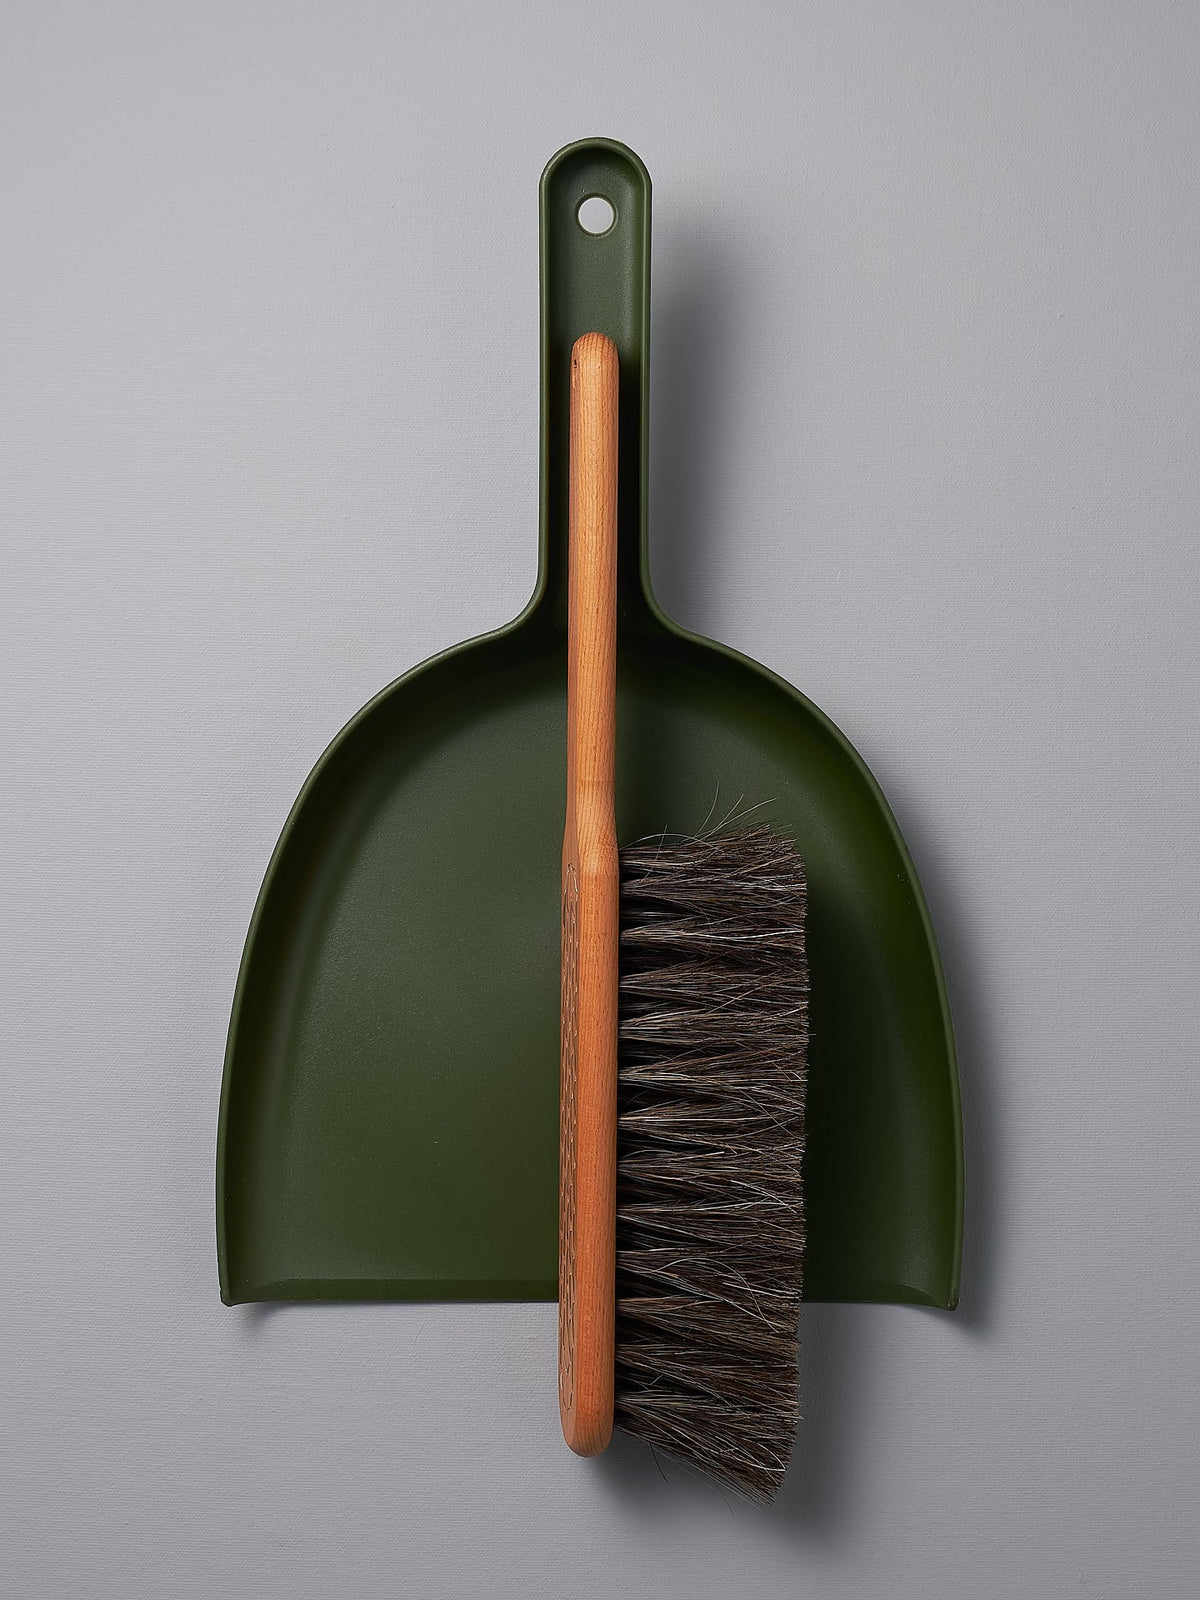 An Iris Hantverk Dustpan &amp; Brush Set – Moss Green with a brush attached to it.